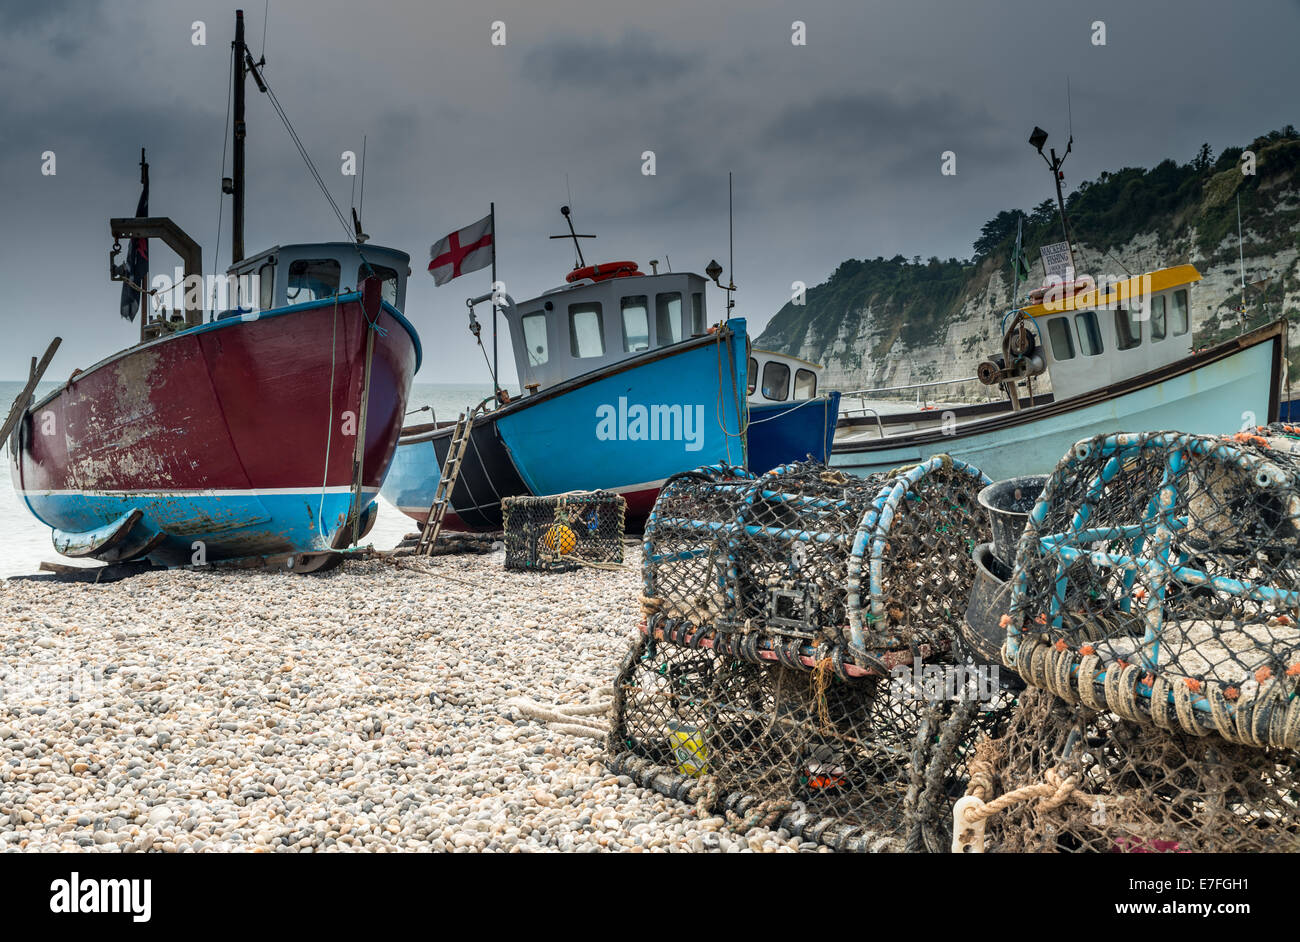 Angelboote/Fischerboote vertäut am Strand von Bier in Dorset, Großbritannien Stockfoto